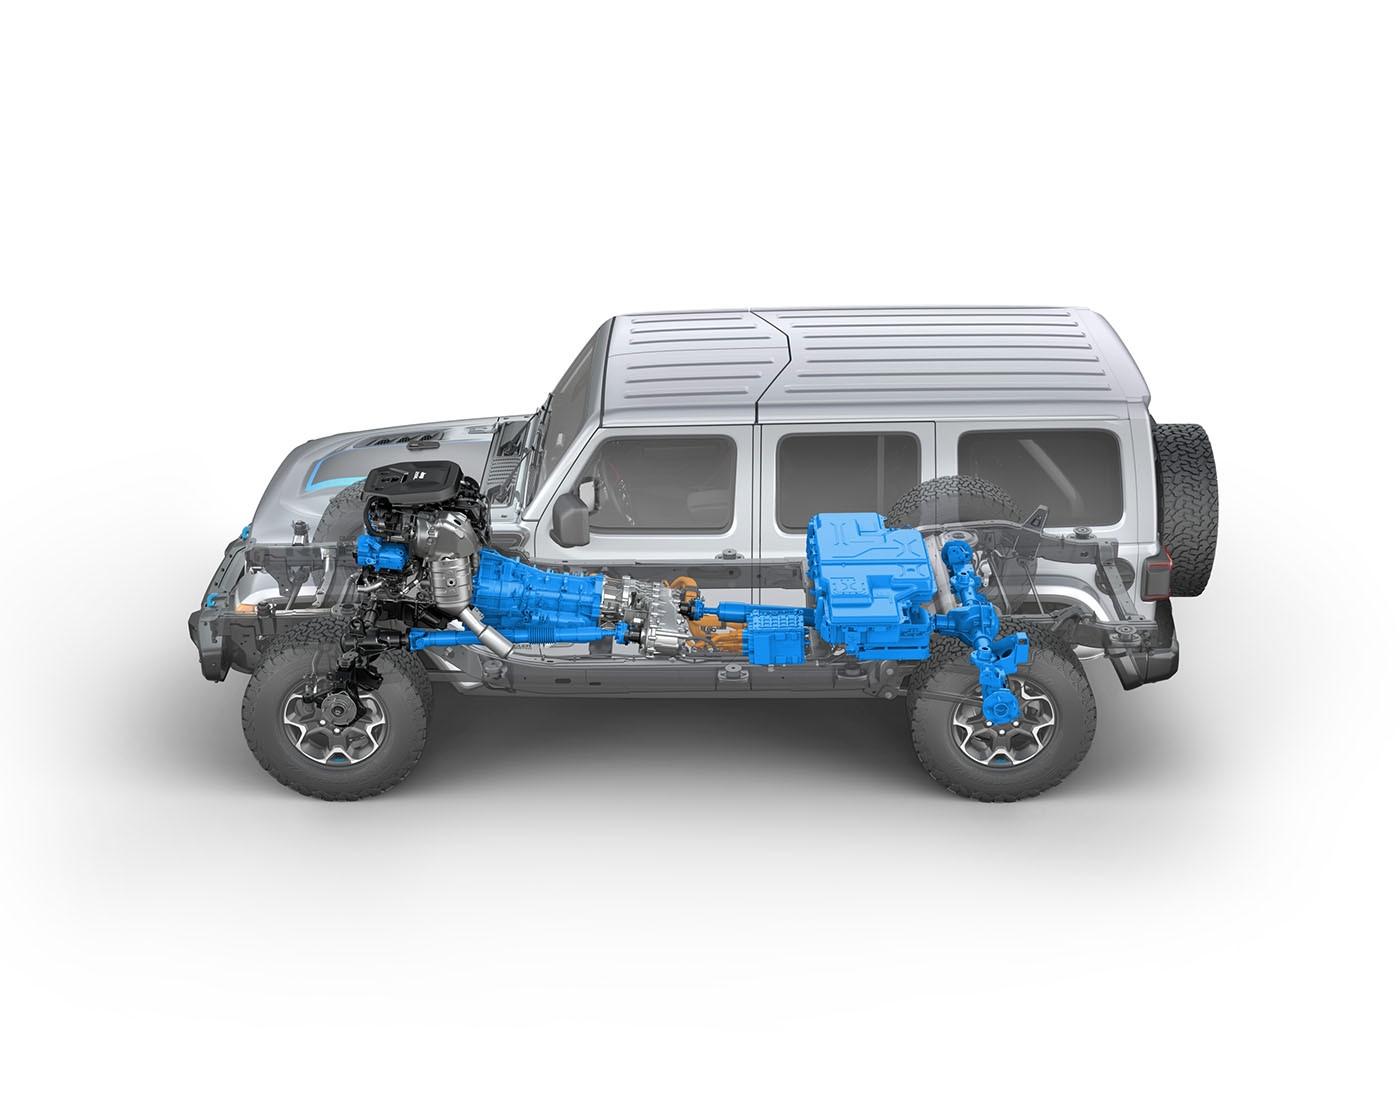 Πόσο διαφορετικό είναι το Jeep Wrangler 4Xe από τα “κοινά” plug in hybrid τετρακίνητα;